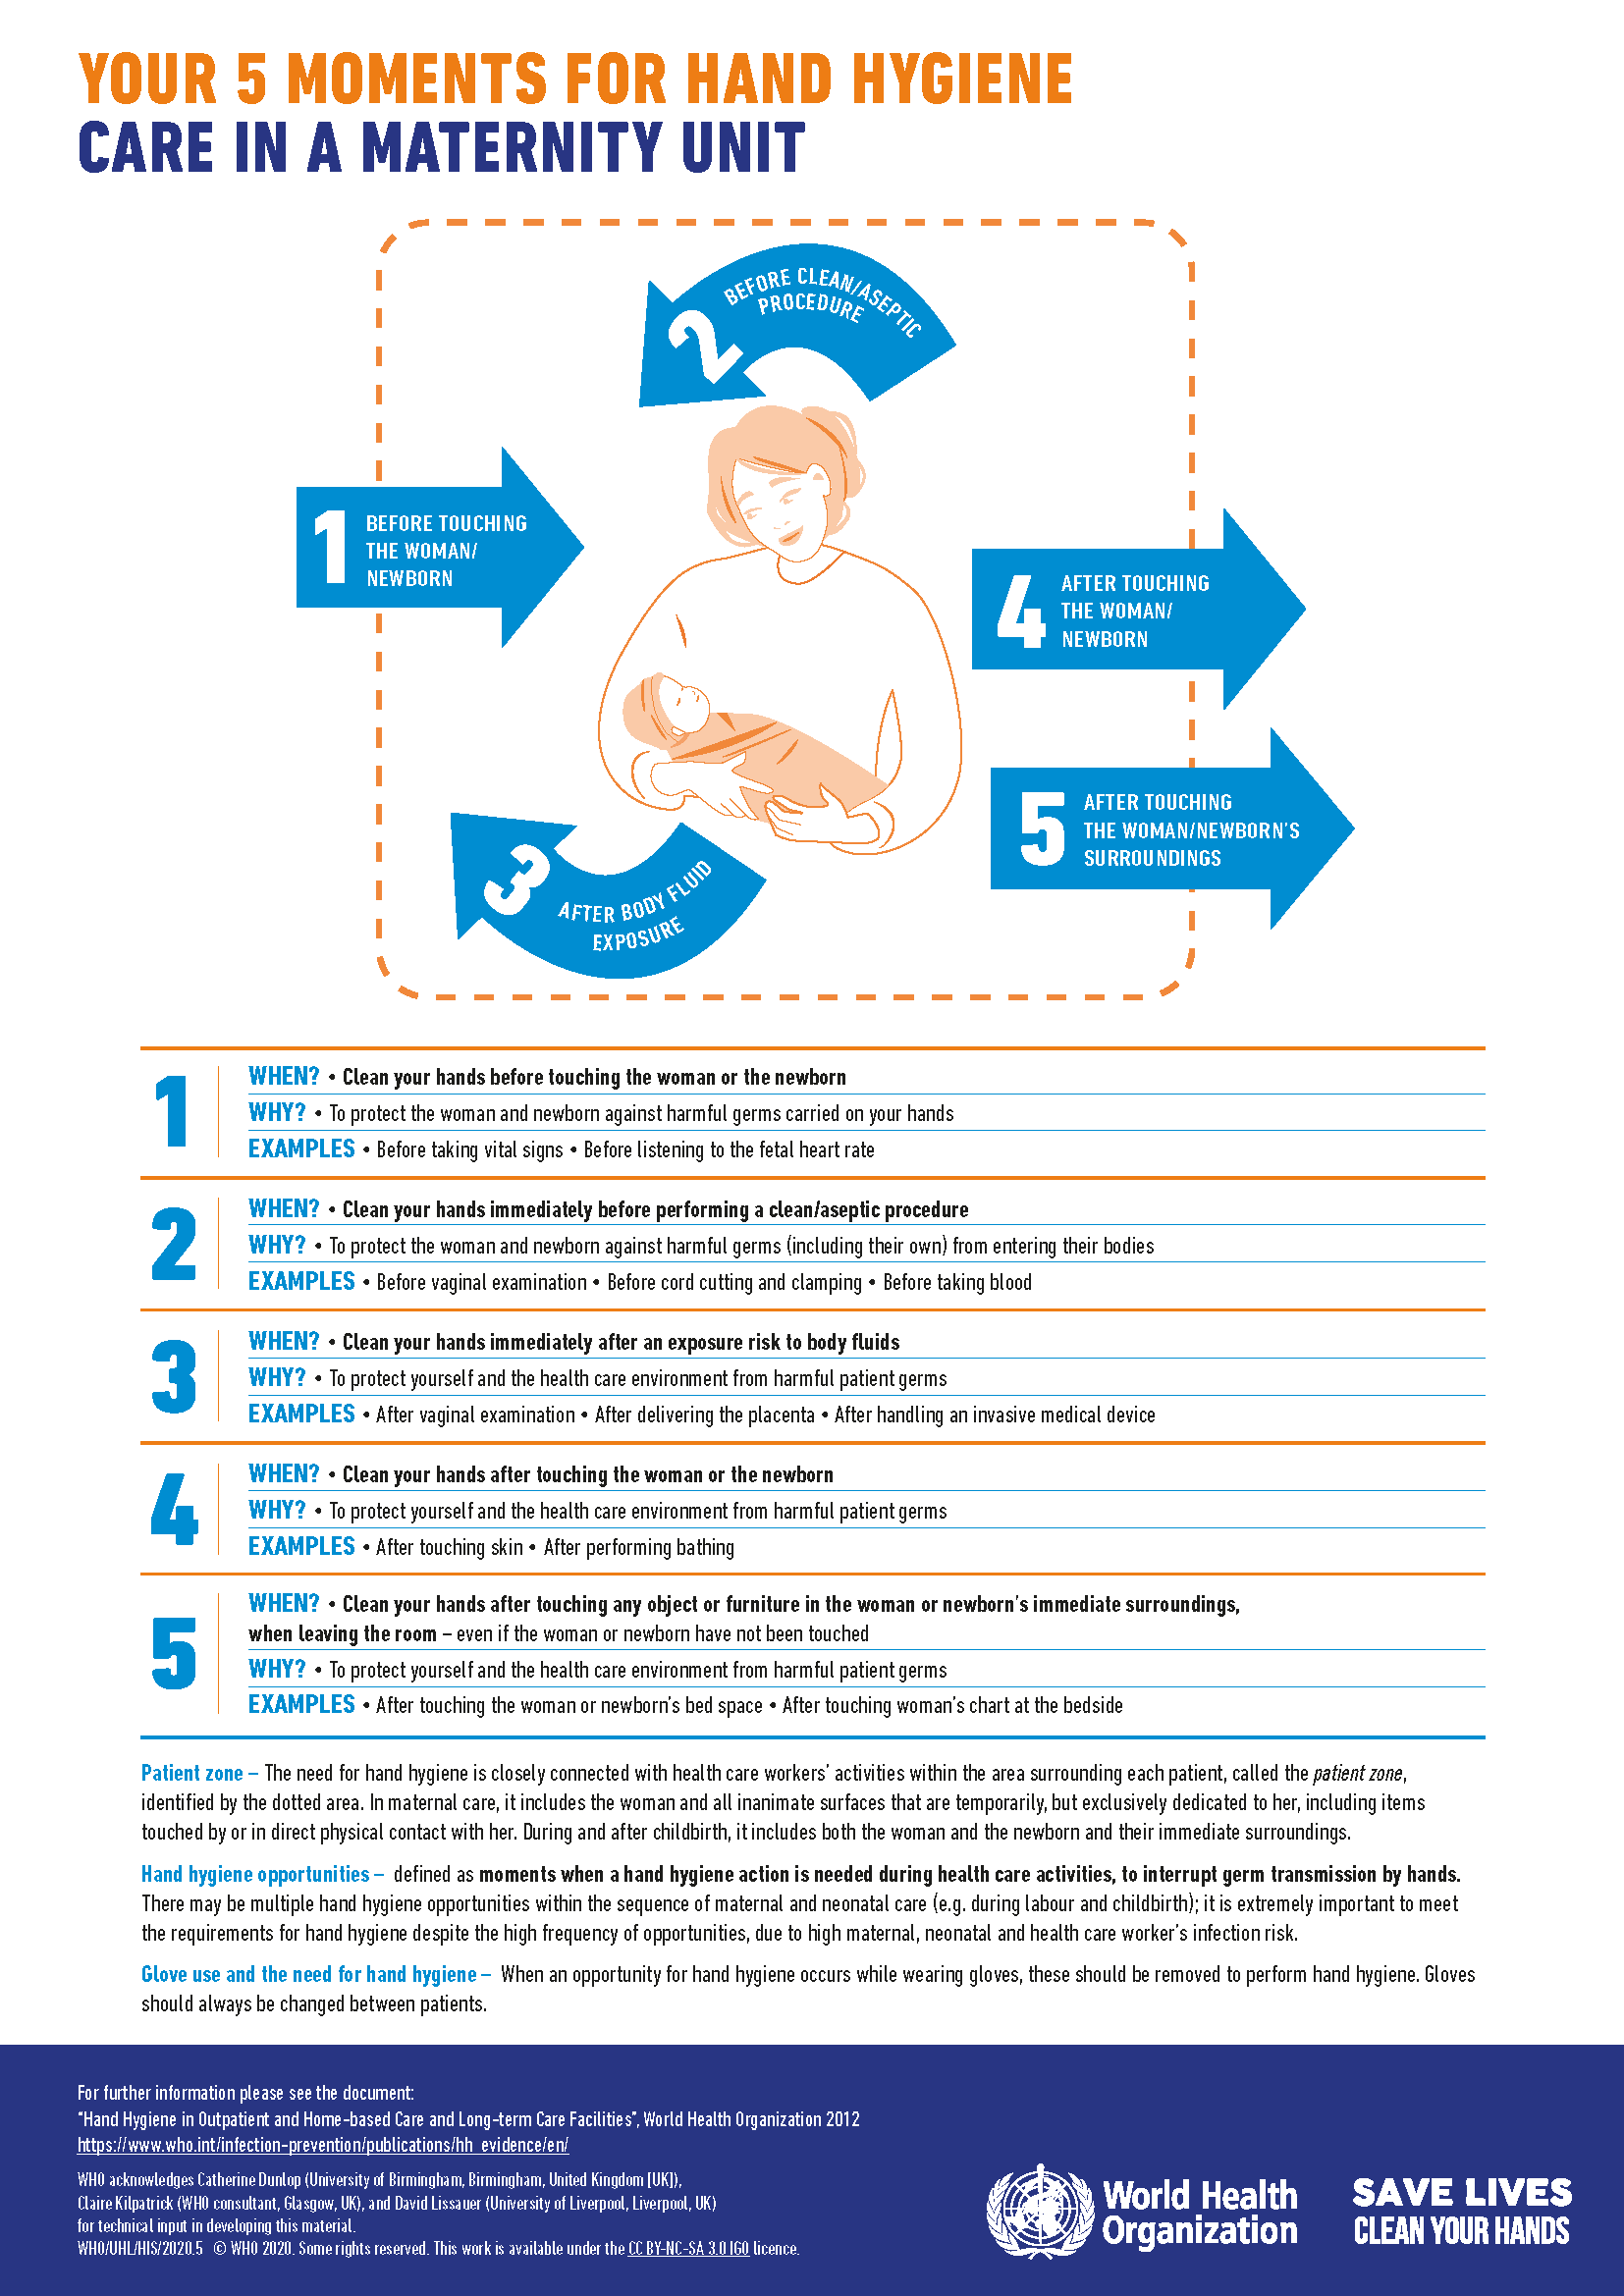 Naissance : les soins immédiats du nouveau-né - Doctissimo